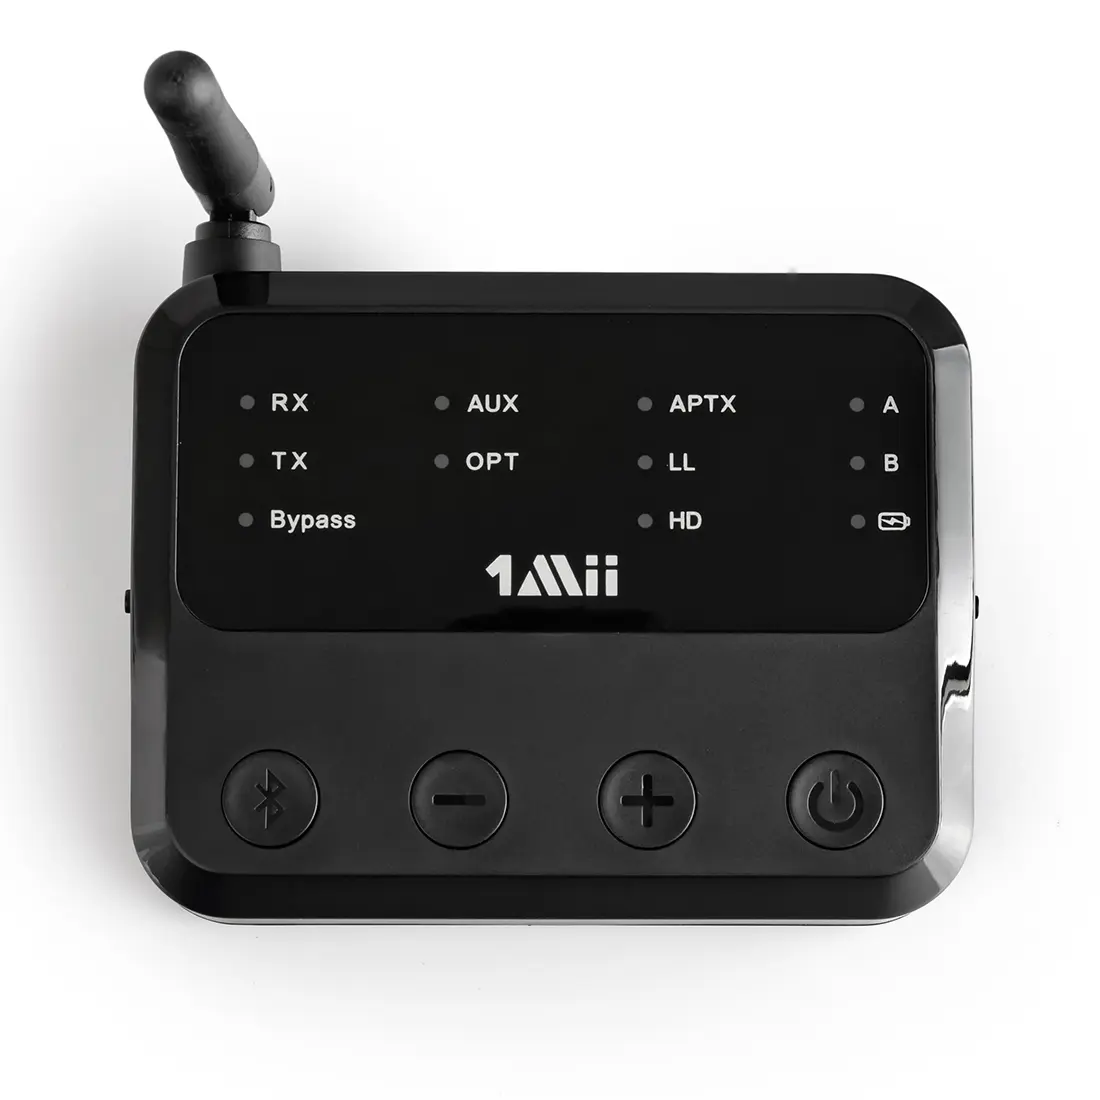 Nadajnik Odbiornik Audio Bluetooth 2w1 APTX-HD 1Mii B310 50m